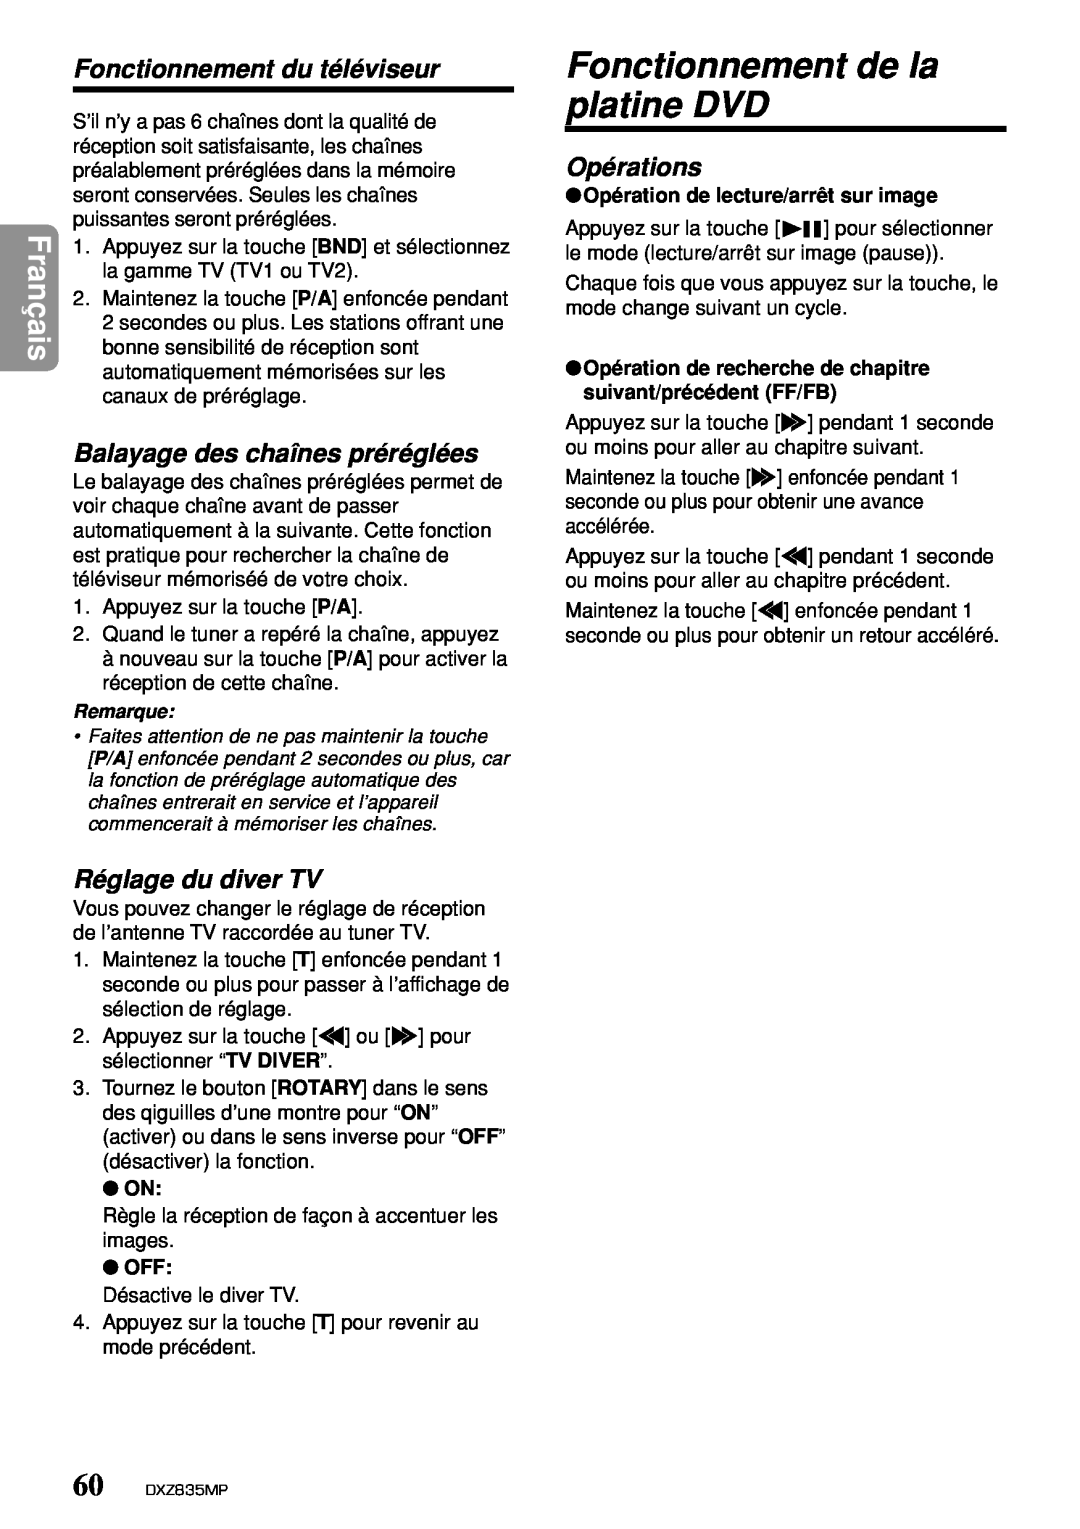 Clarion DXZ835MP Fonctionnement de la platine DVD, Fonctionnement du téléviseur, Balayage des chaînes préréglées, Français 